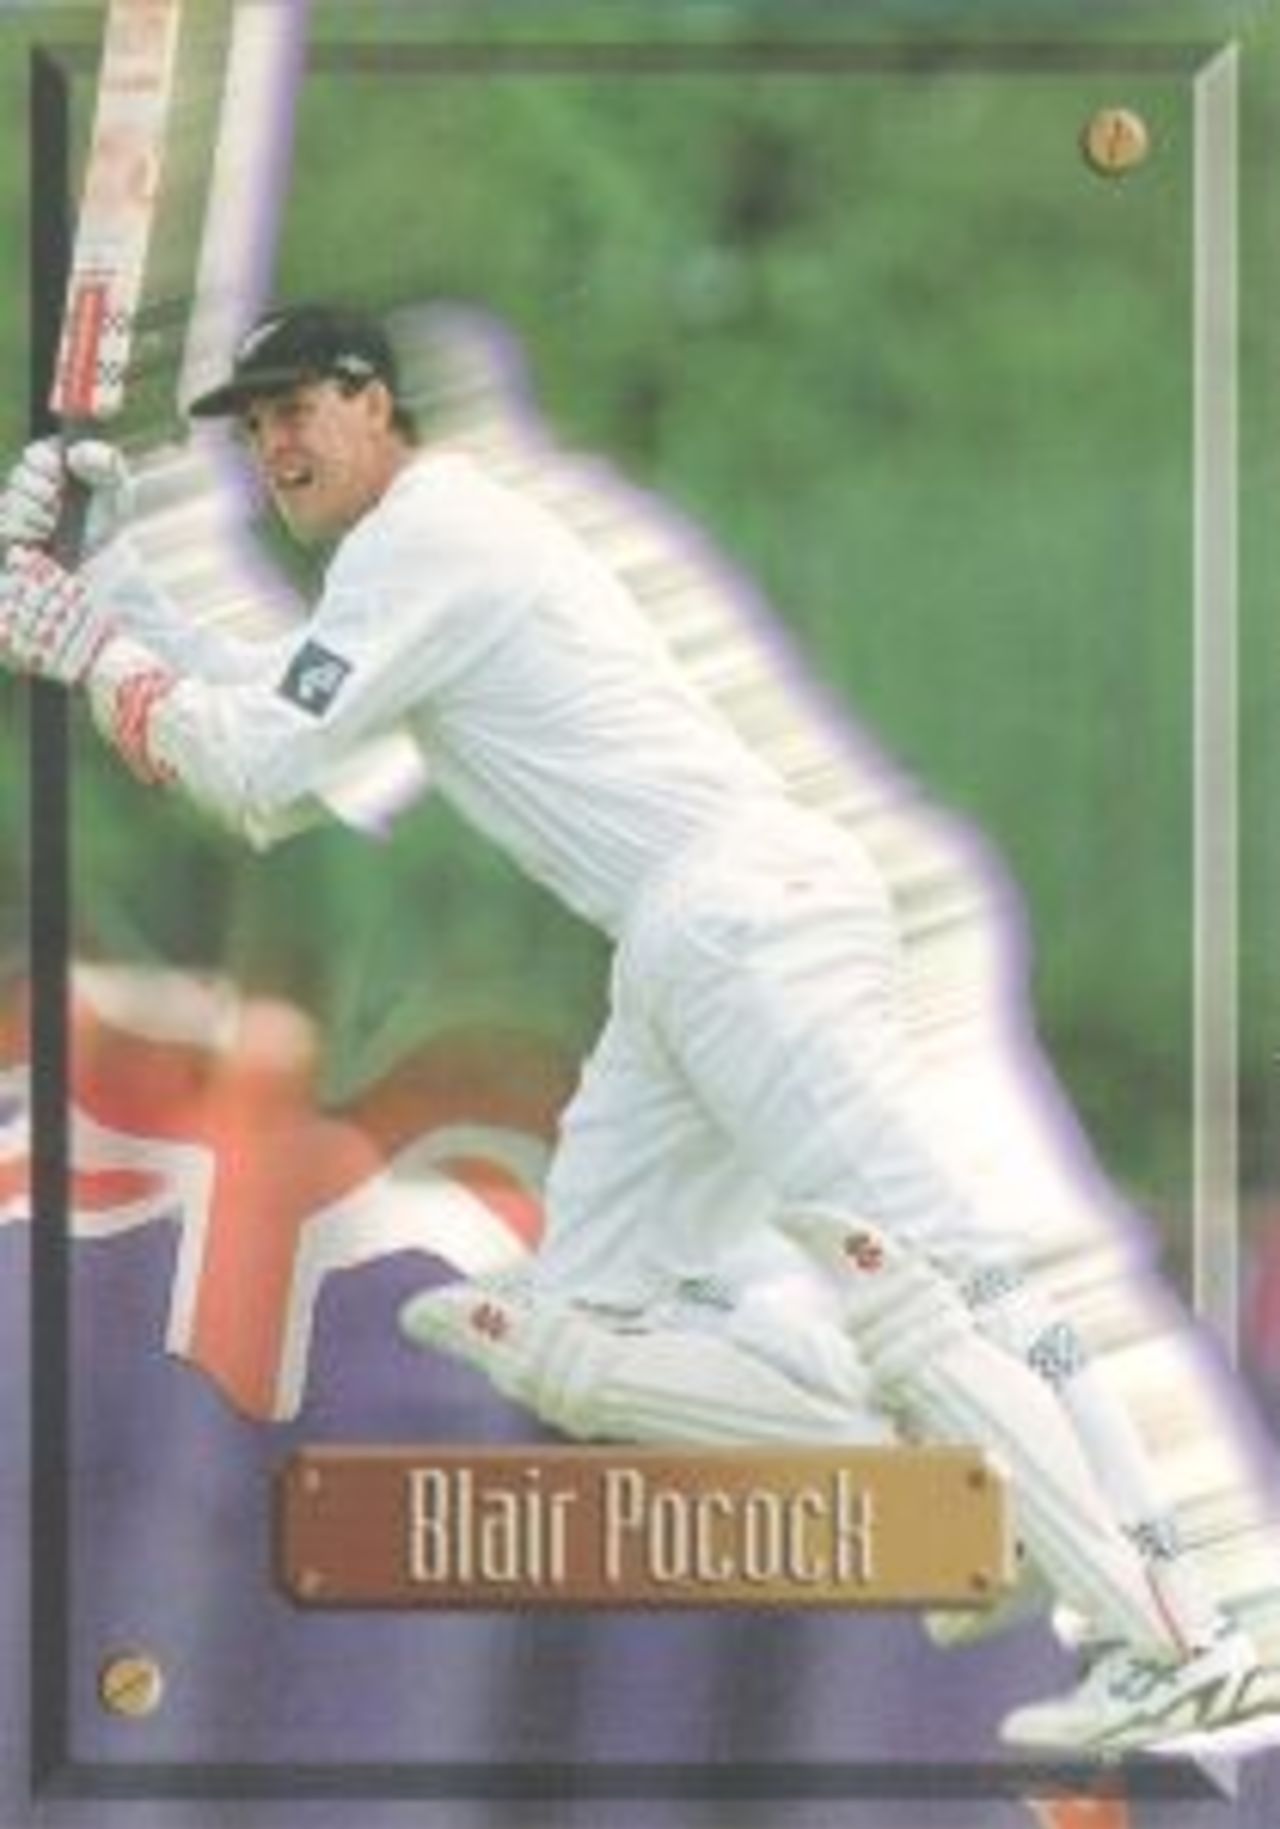 Trade card: Top deck Blair Pocock